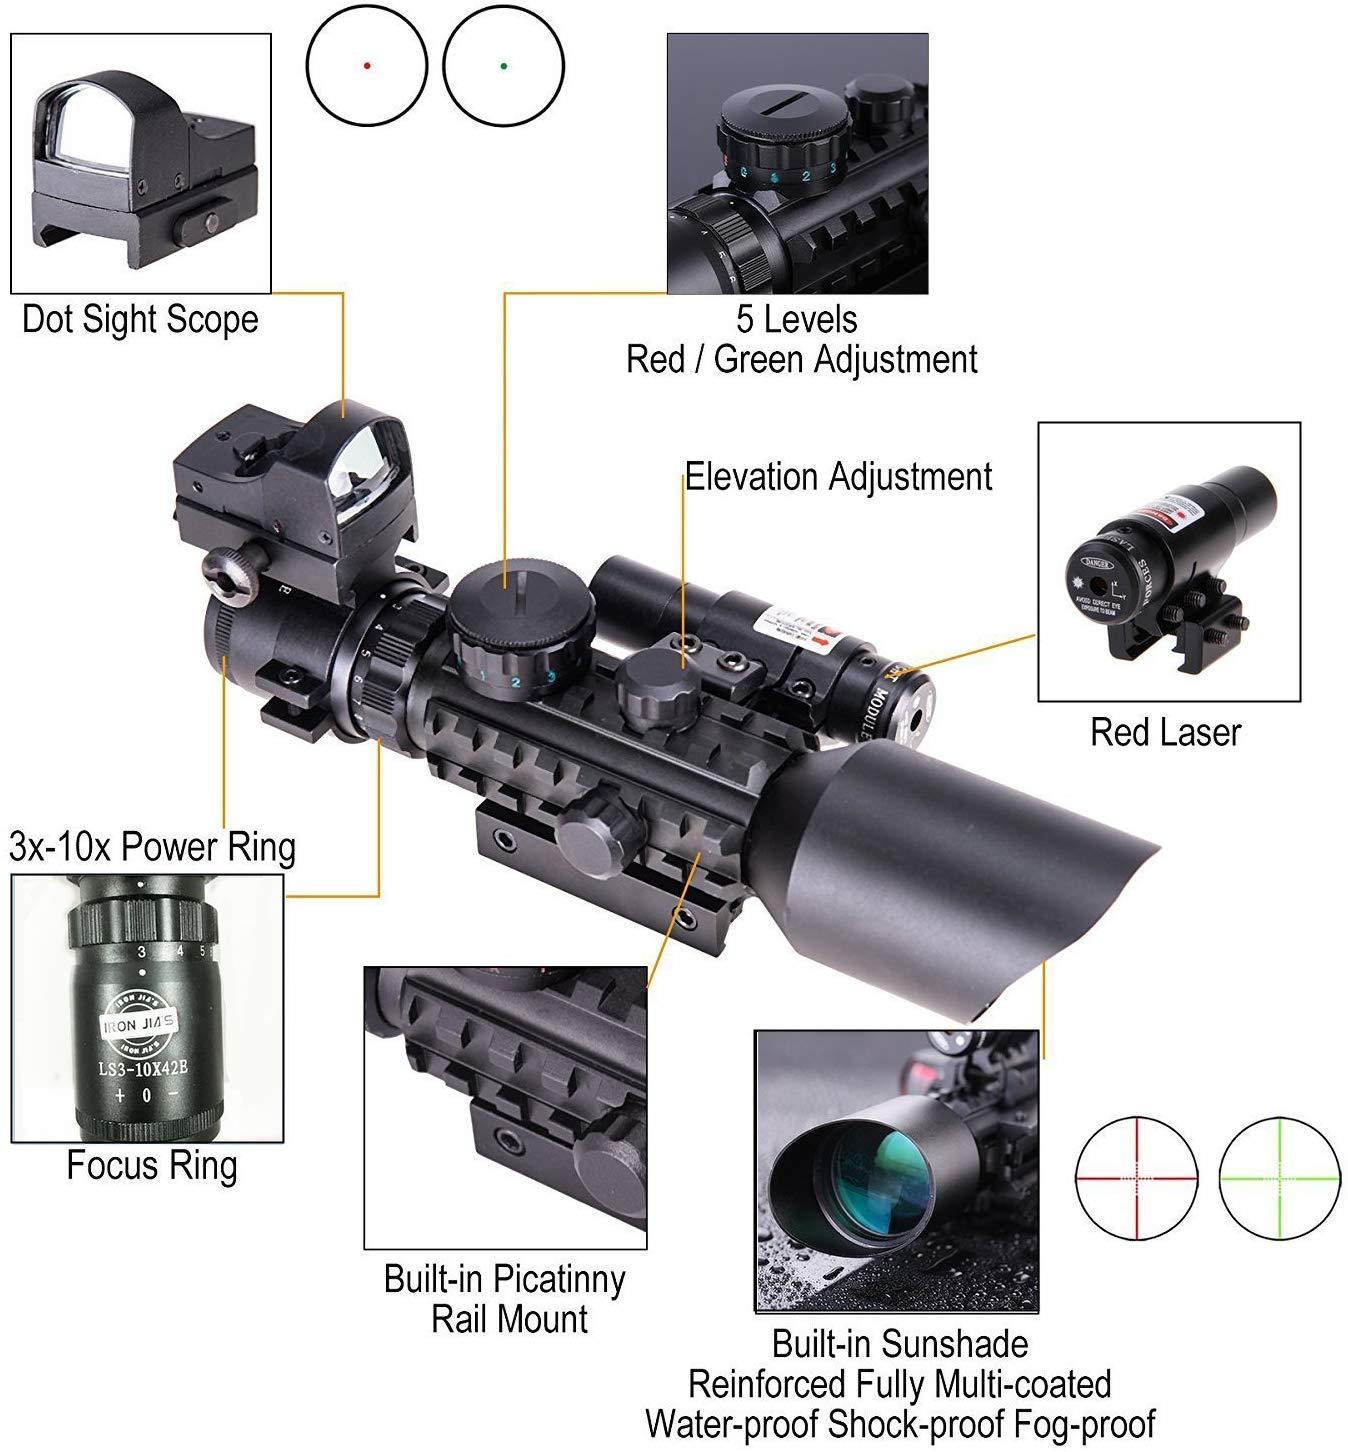 IRON JIA'S Lunettes de visée Compact Vue Red Dot Laser réglable w / Montage  pour 20mm Picatinny & 11mm Rails Airsoft Chasse (Point Rouge) : :  Sports et Loisirs